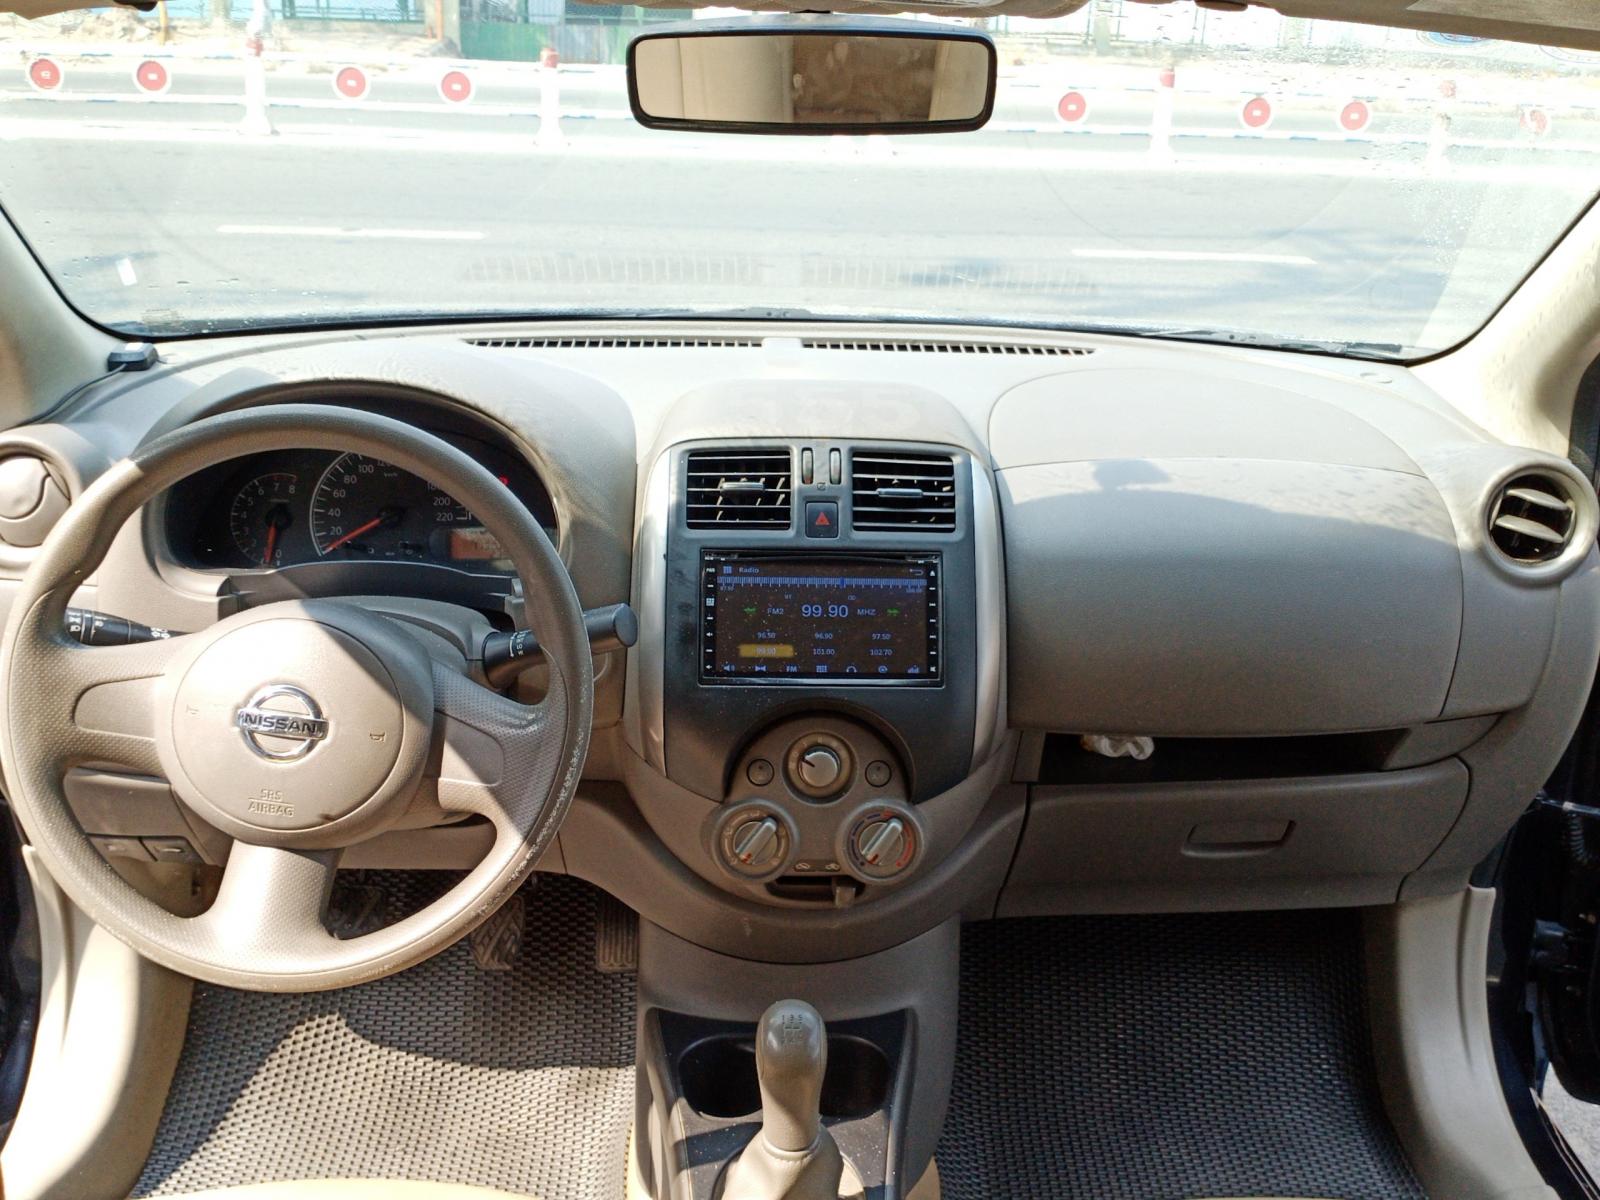 Nissan Sunny 1.5L XL 2015 - Cần bán xe Nissan Sunny 1.5L XL năm 2015, màu đen biển SG, mới chạy 115.000km - giá cực mềm